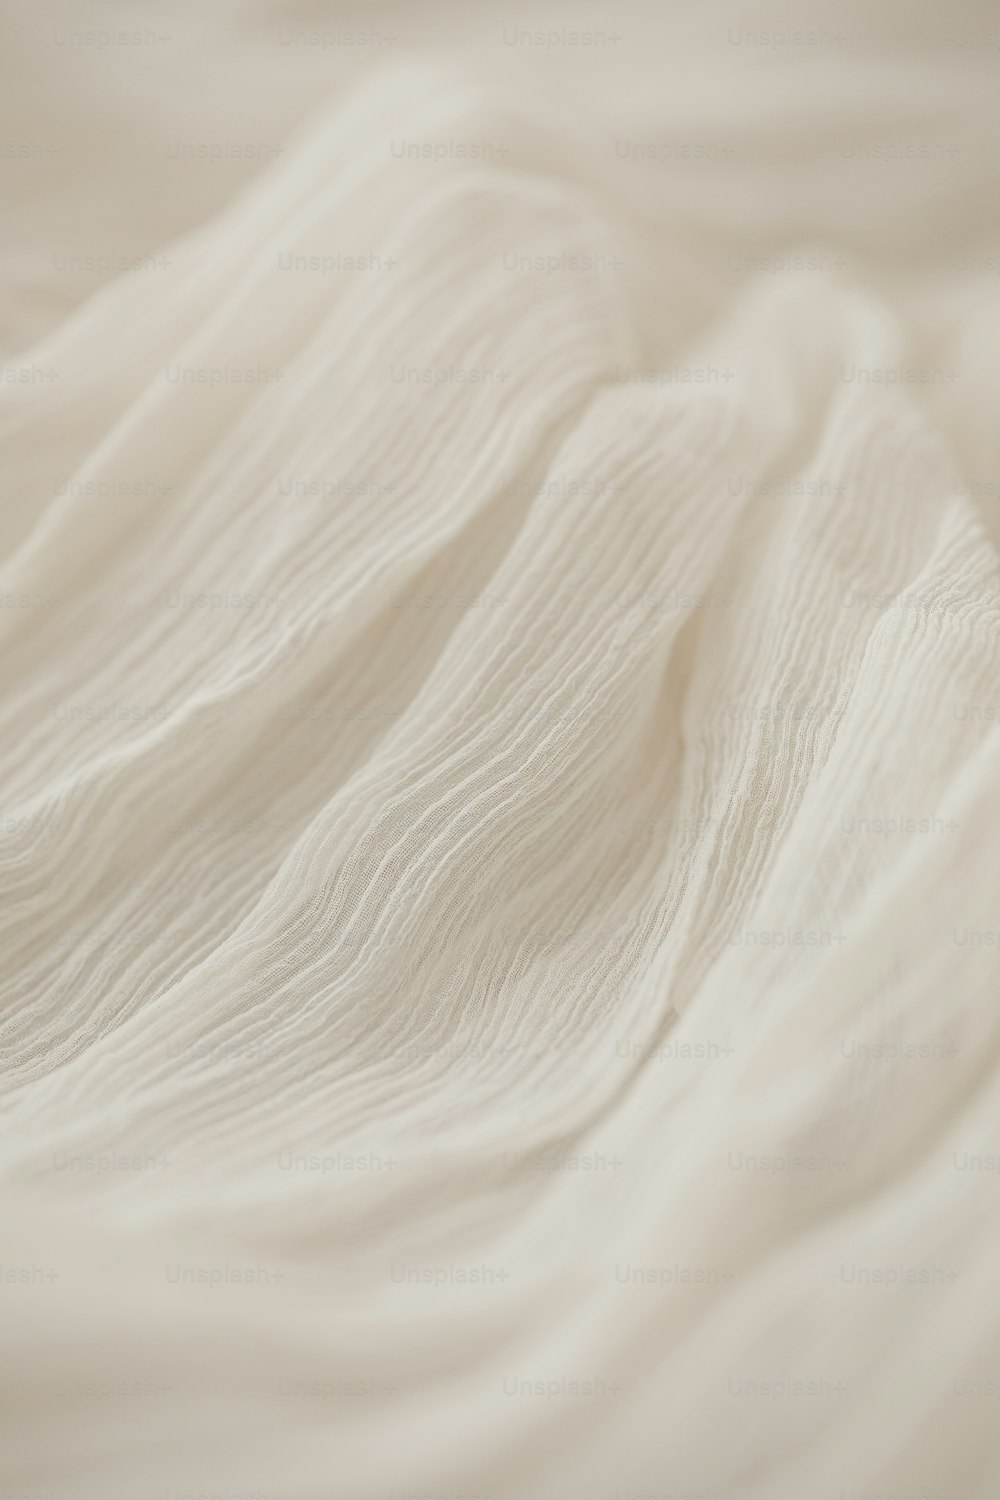 Un primer plano de una cama con sábanas blancas